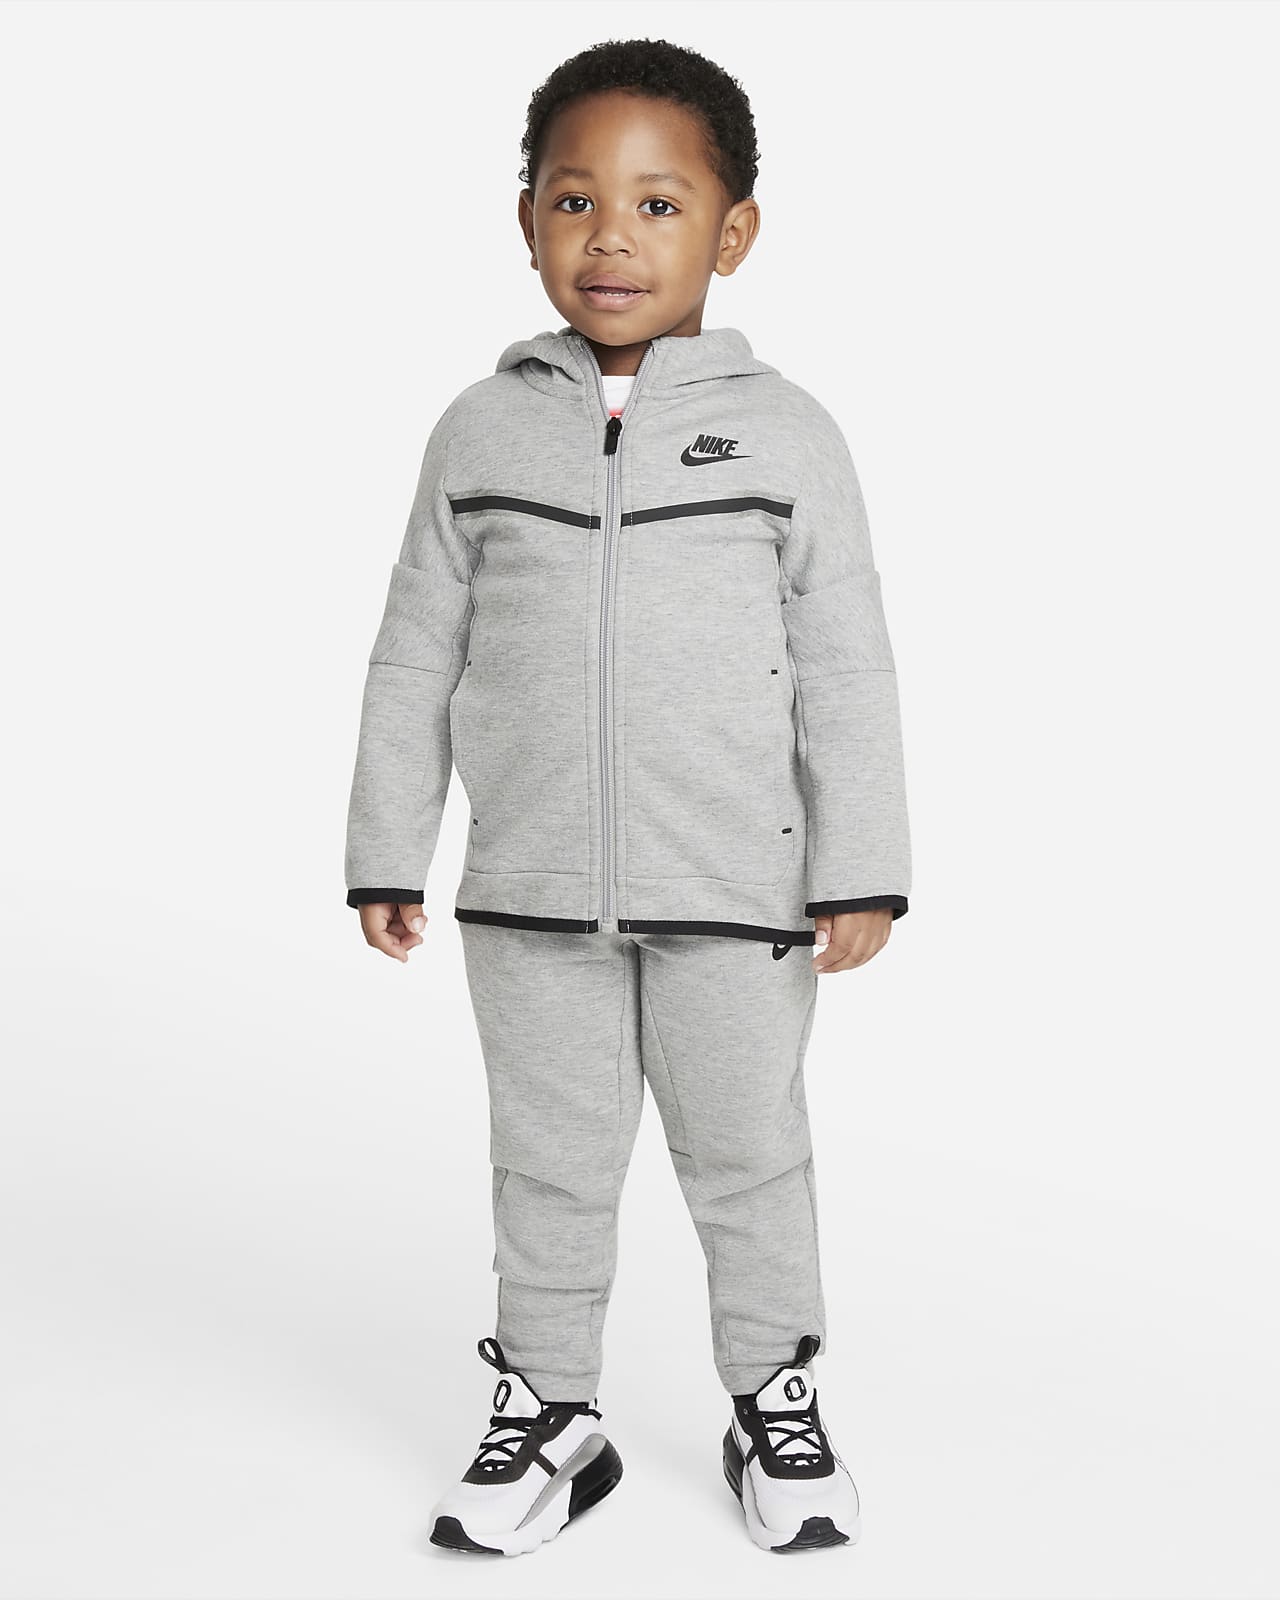 Sportsweear Tech Fleece-sæt med hættetrøje og bukser til småbørn. DK